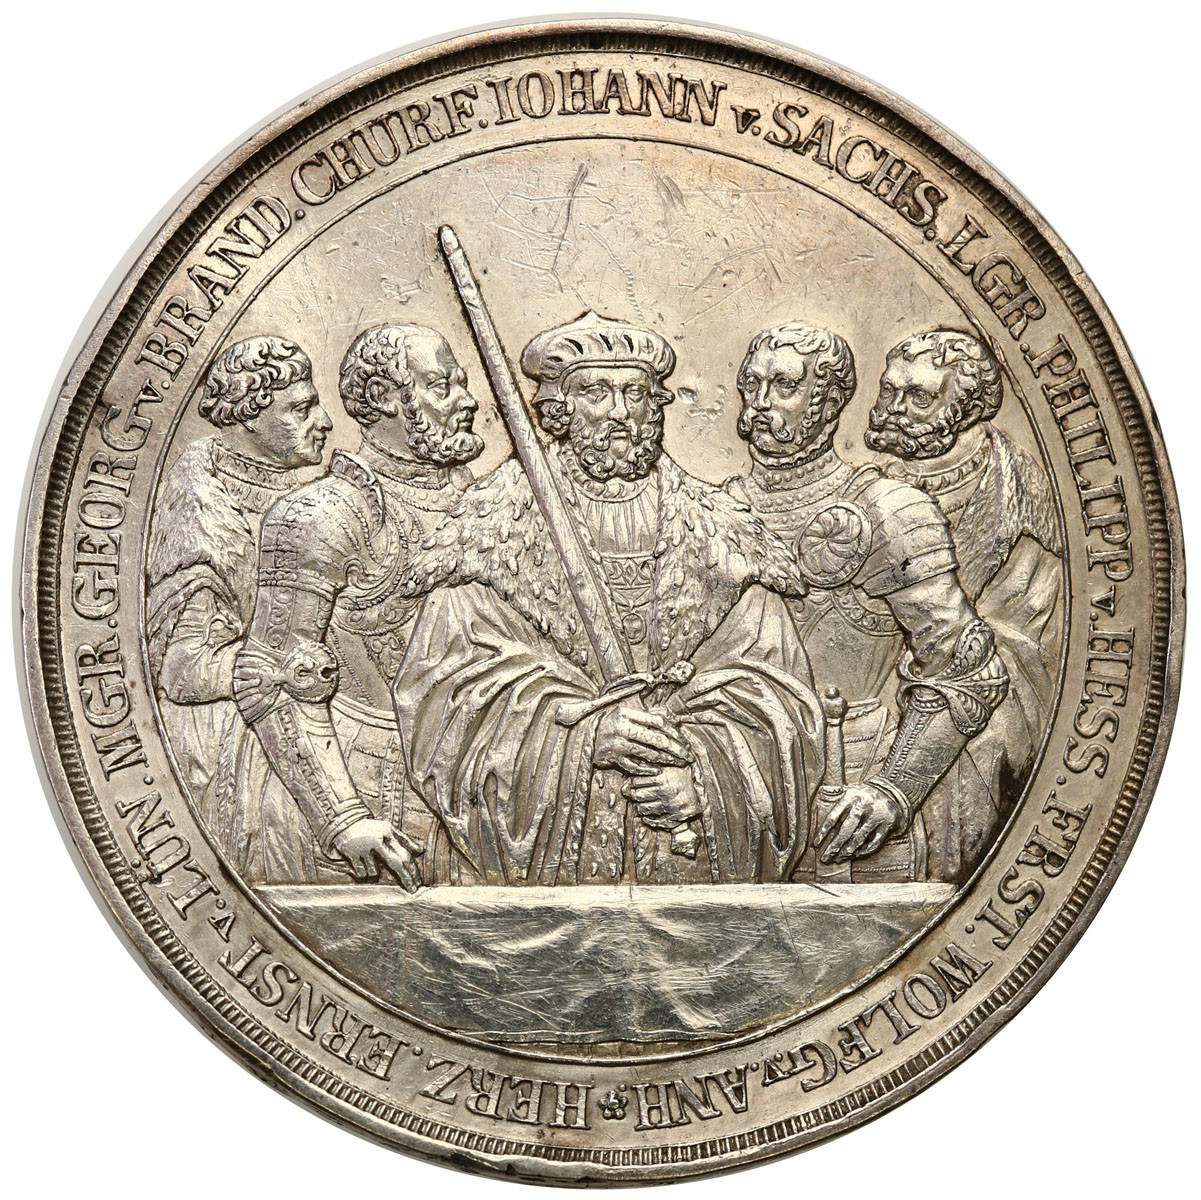 Niemcy, Saksonia. Medal 1829